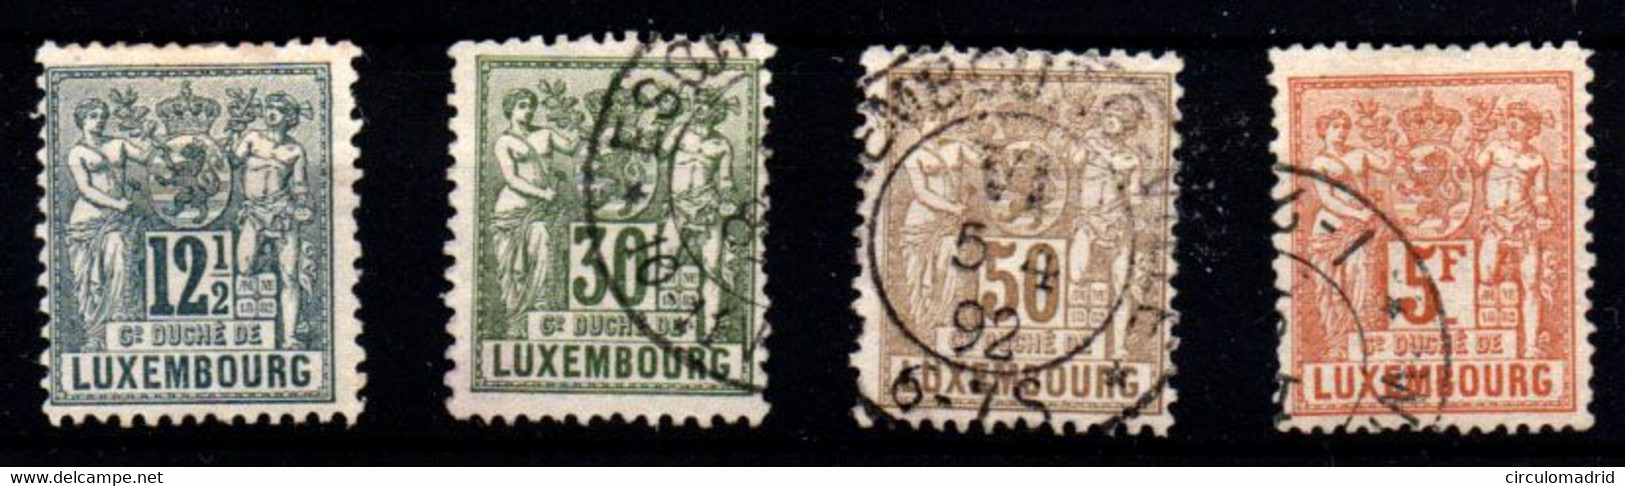 Luxemburgo Nº 52, 55/6, 58. Año 1882/91 - 1882 Allegory